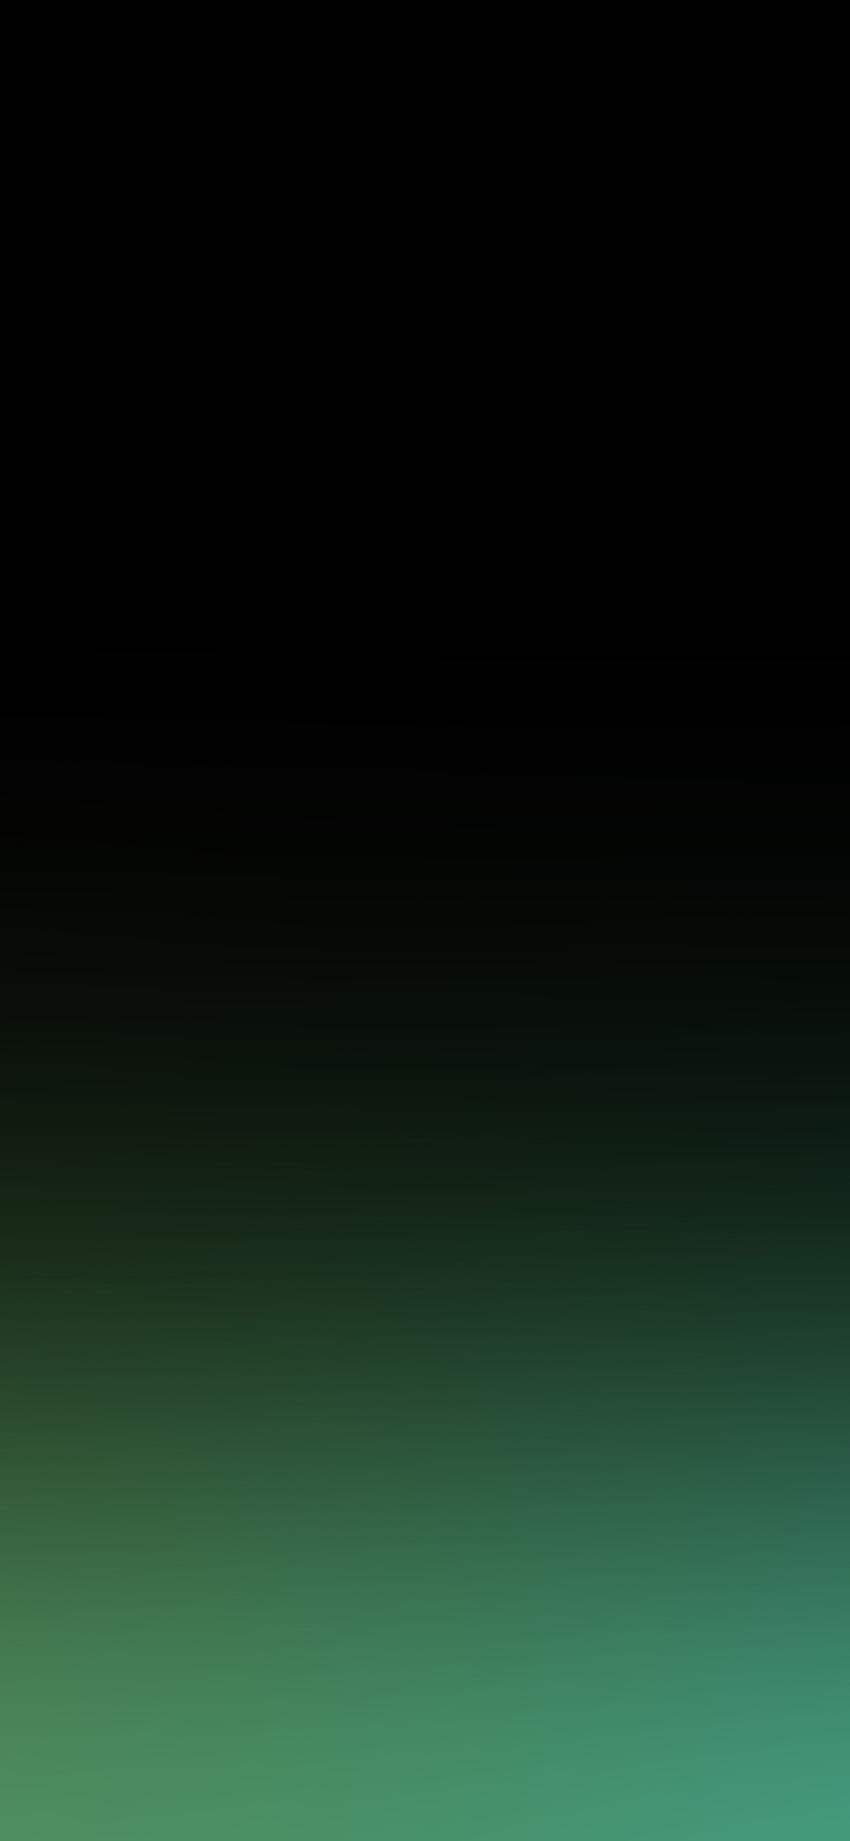 iPhone X 黒のグラデーション、黒と緑のグラデーション HD電話の壁紙